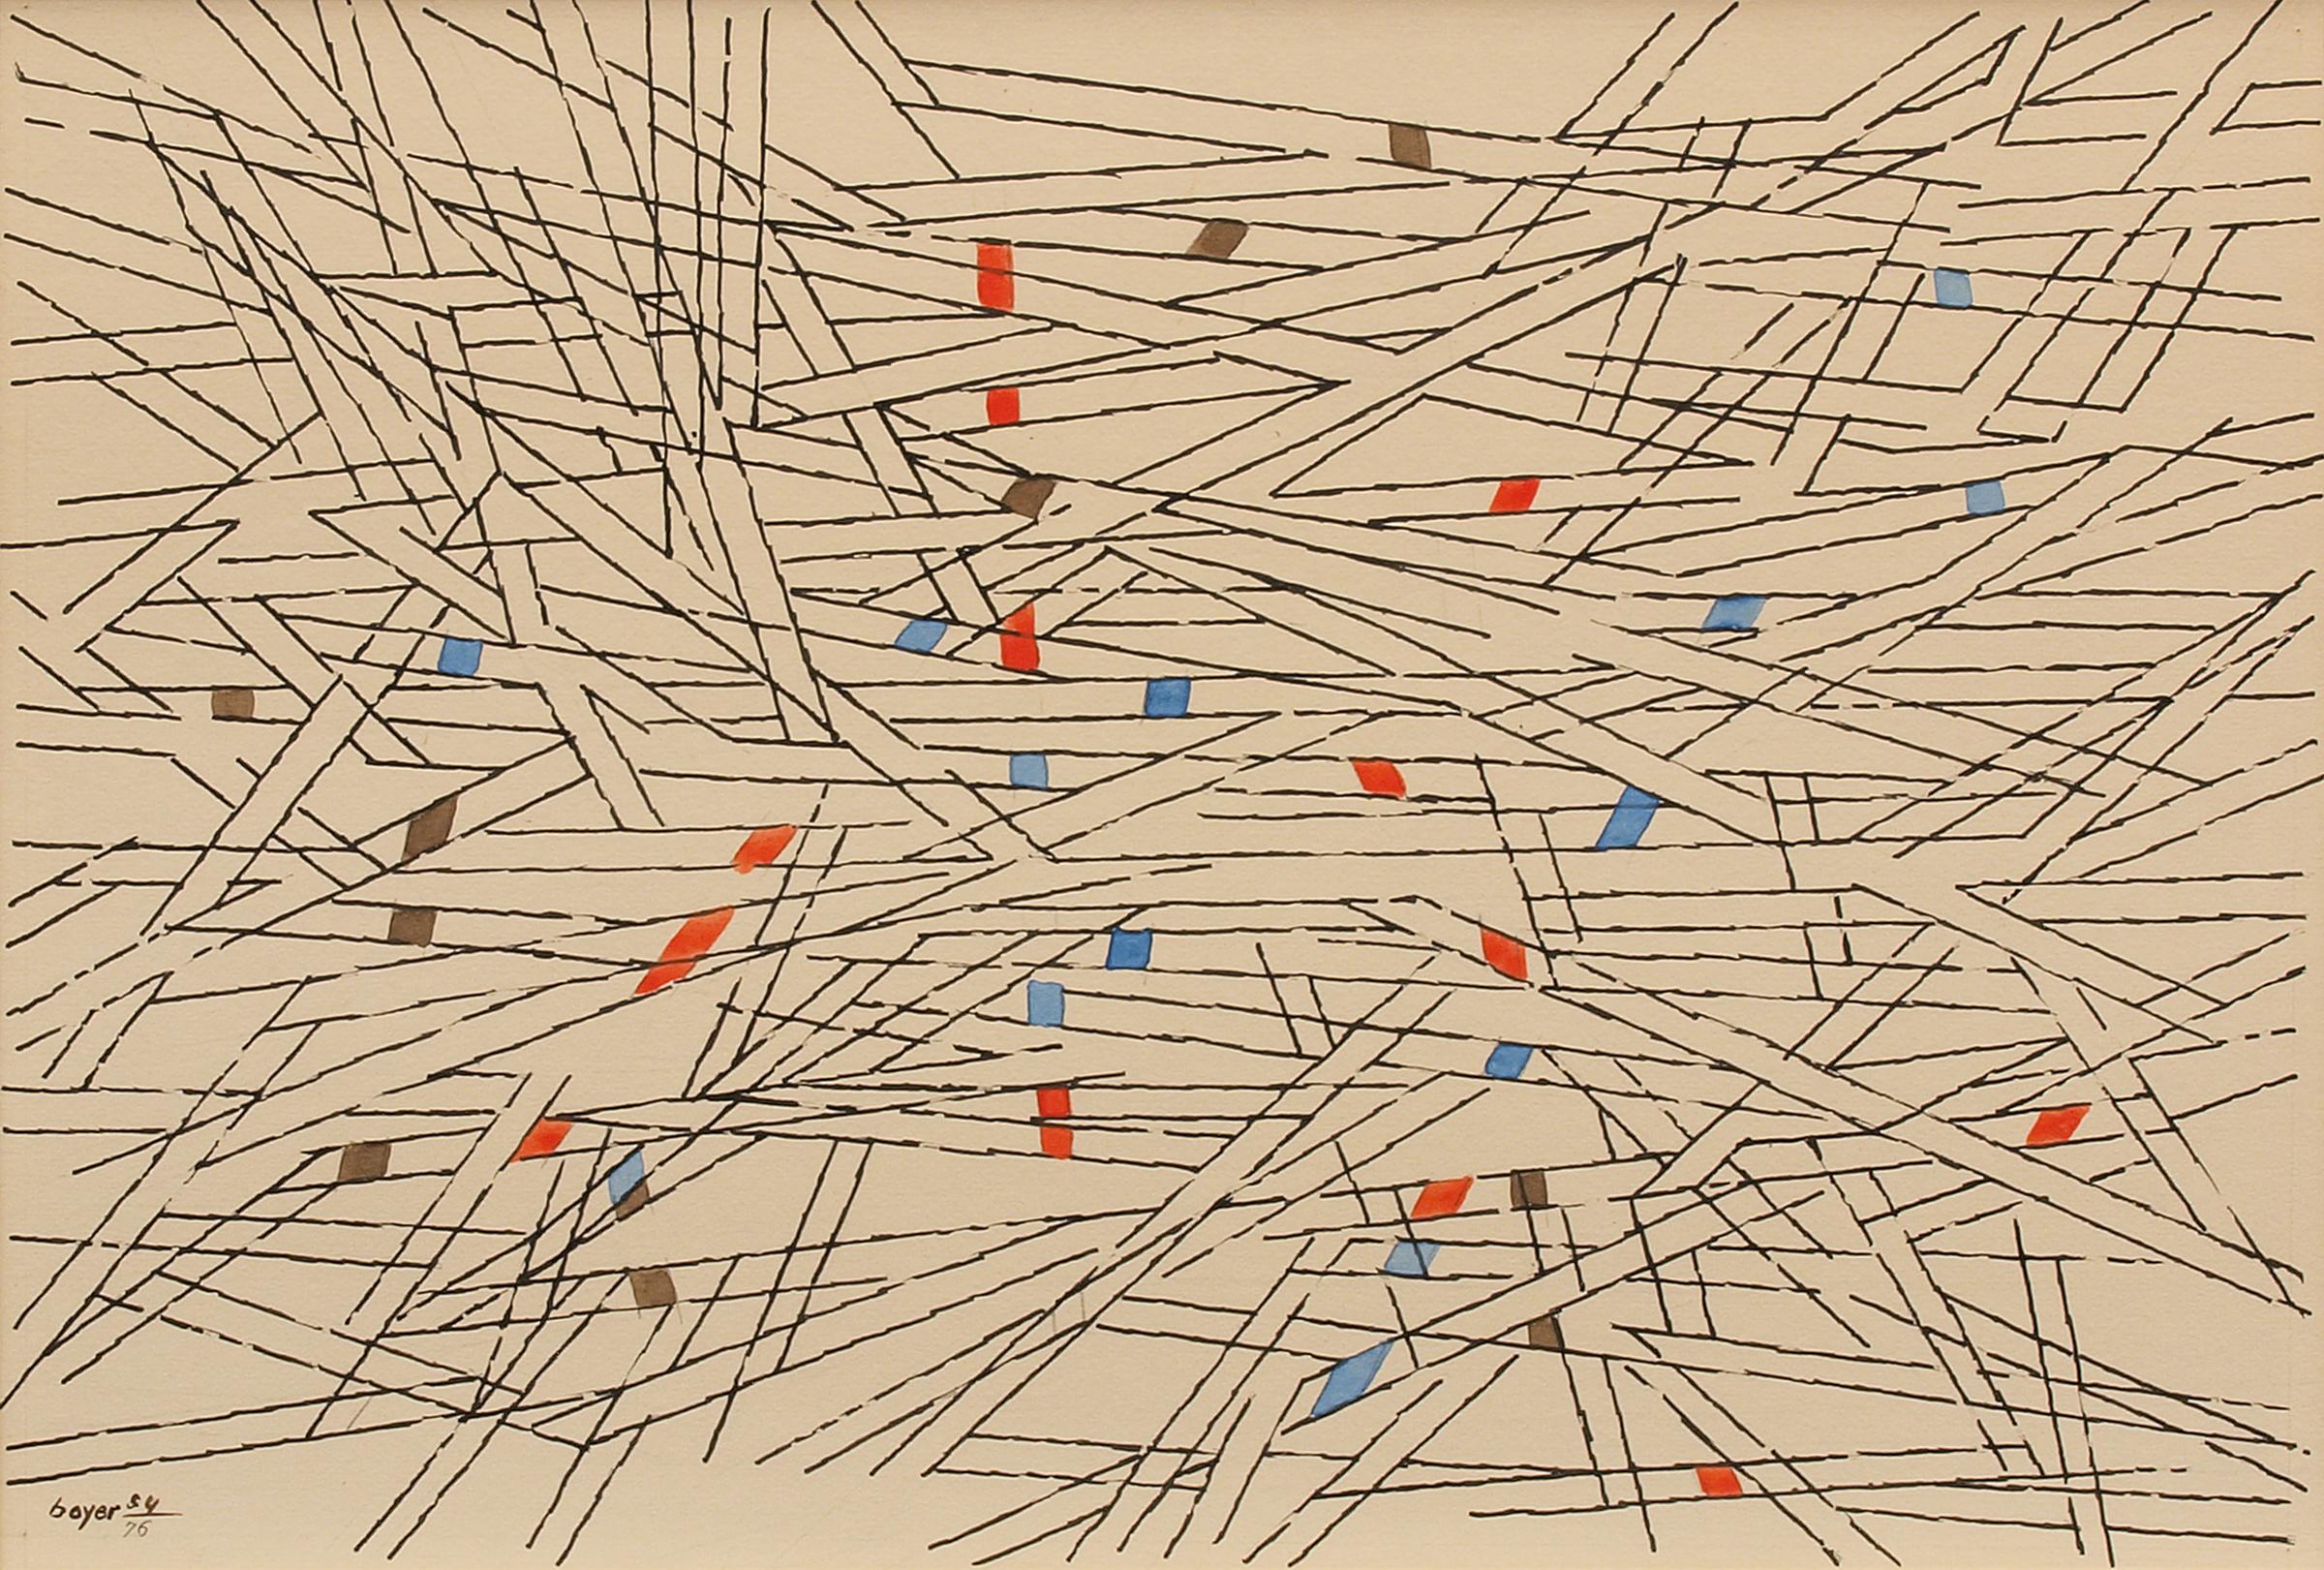 Abstrakte Komposition aus den 1950er Jahren in Braun, Orange und Blau mit schwarzen Parallellinien  (Geometrische Abstraktion), Mixed Media Art, von Herbert Bayer